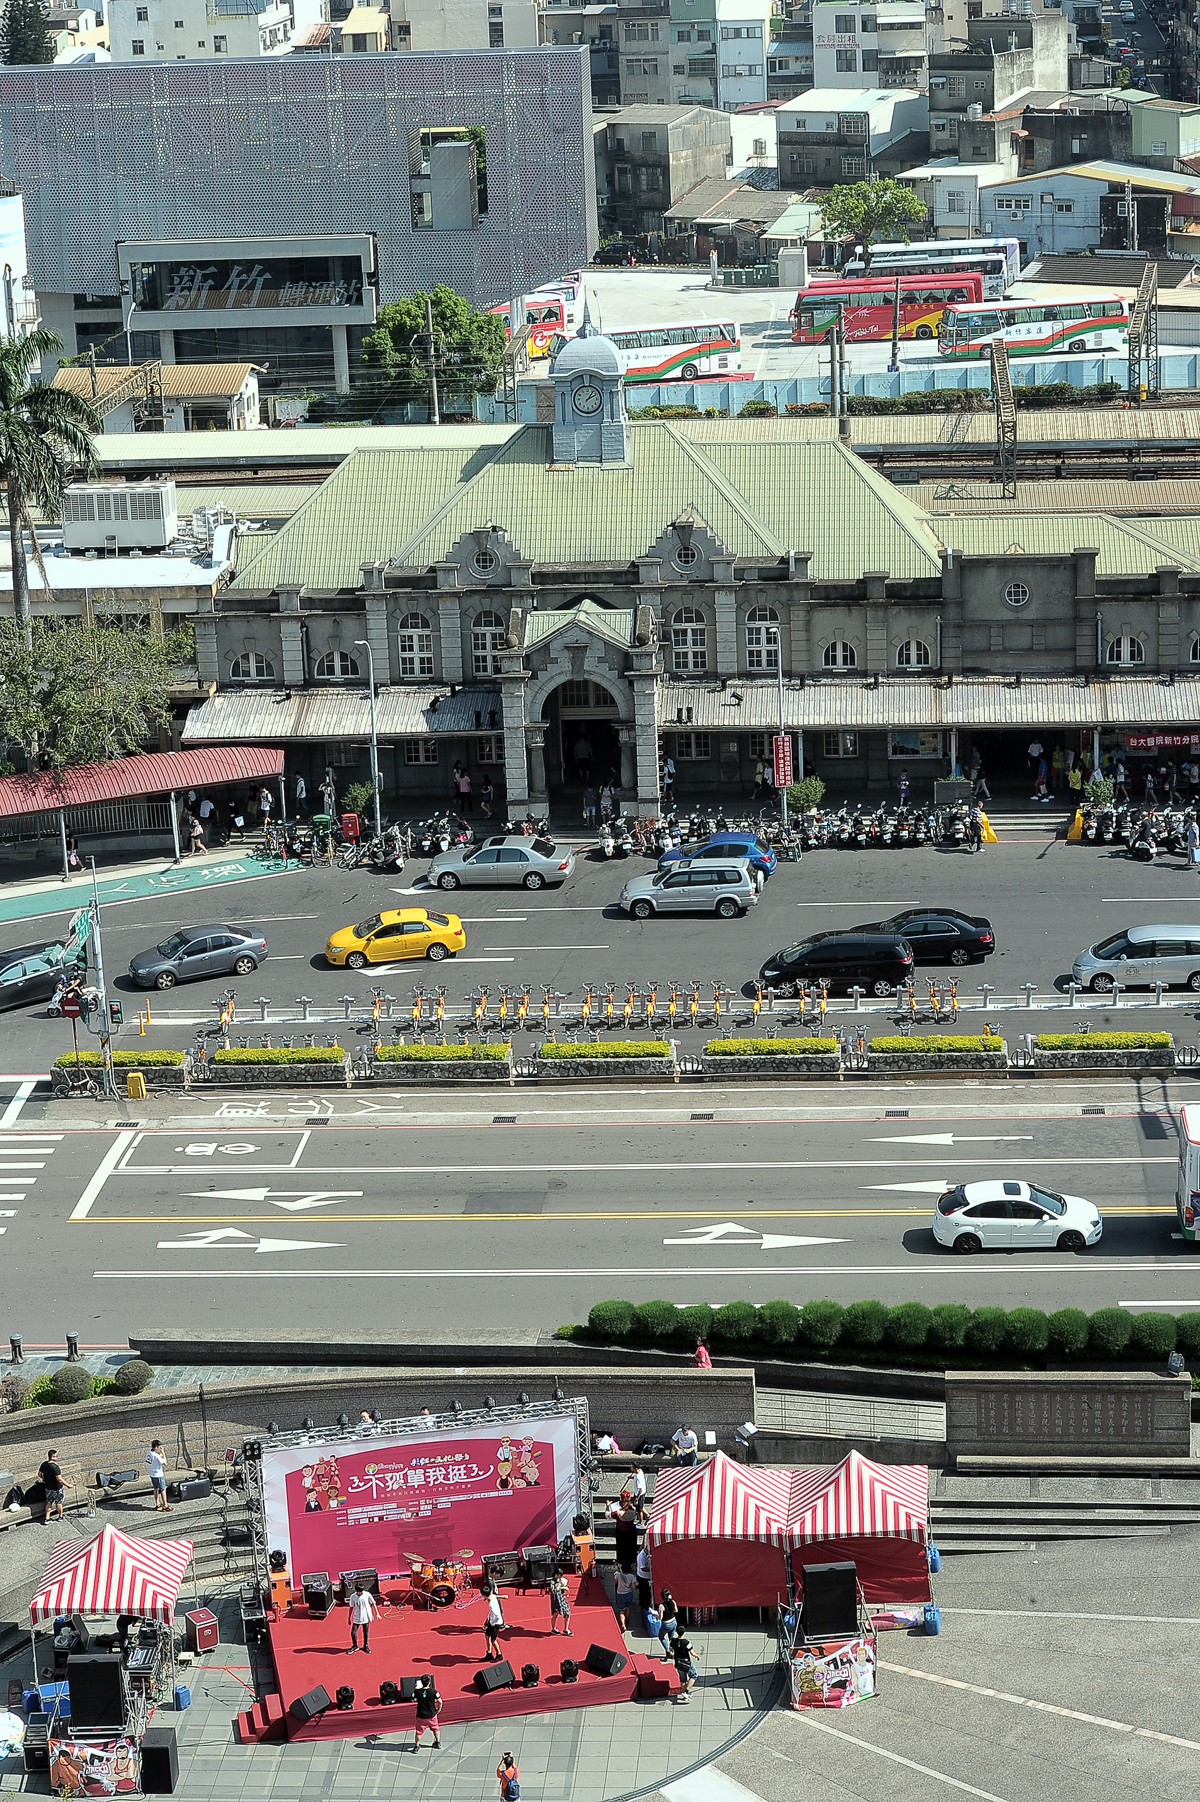 林揆視察新竹火車站與新竹公園 期盼推動相關計畫 建設宜居城市